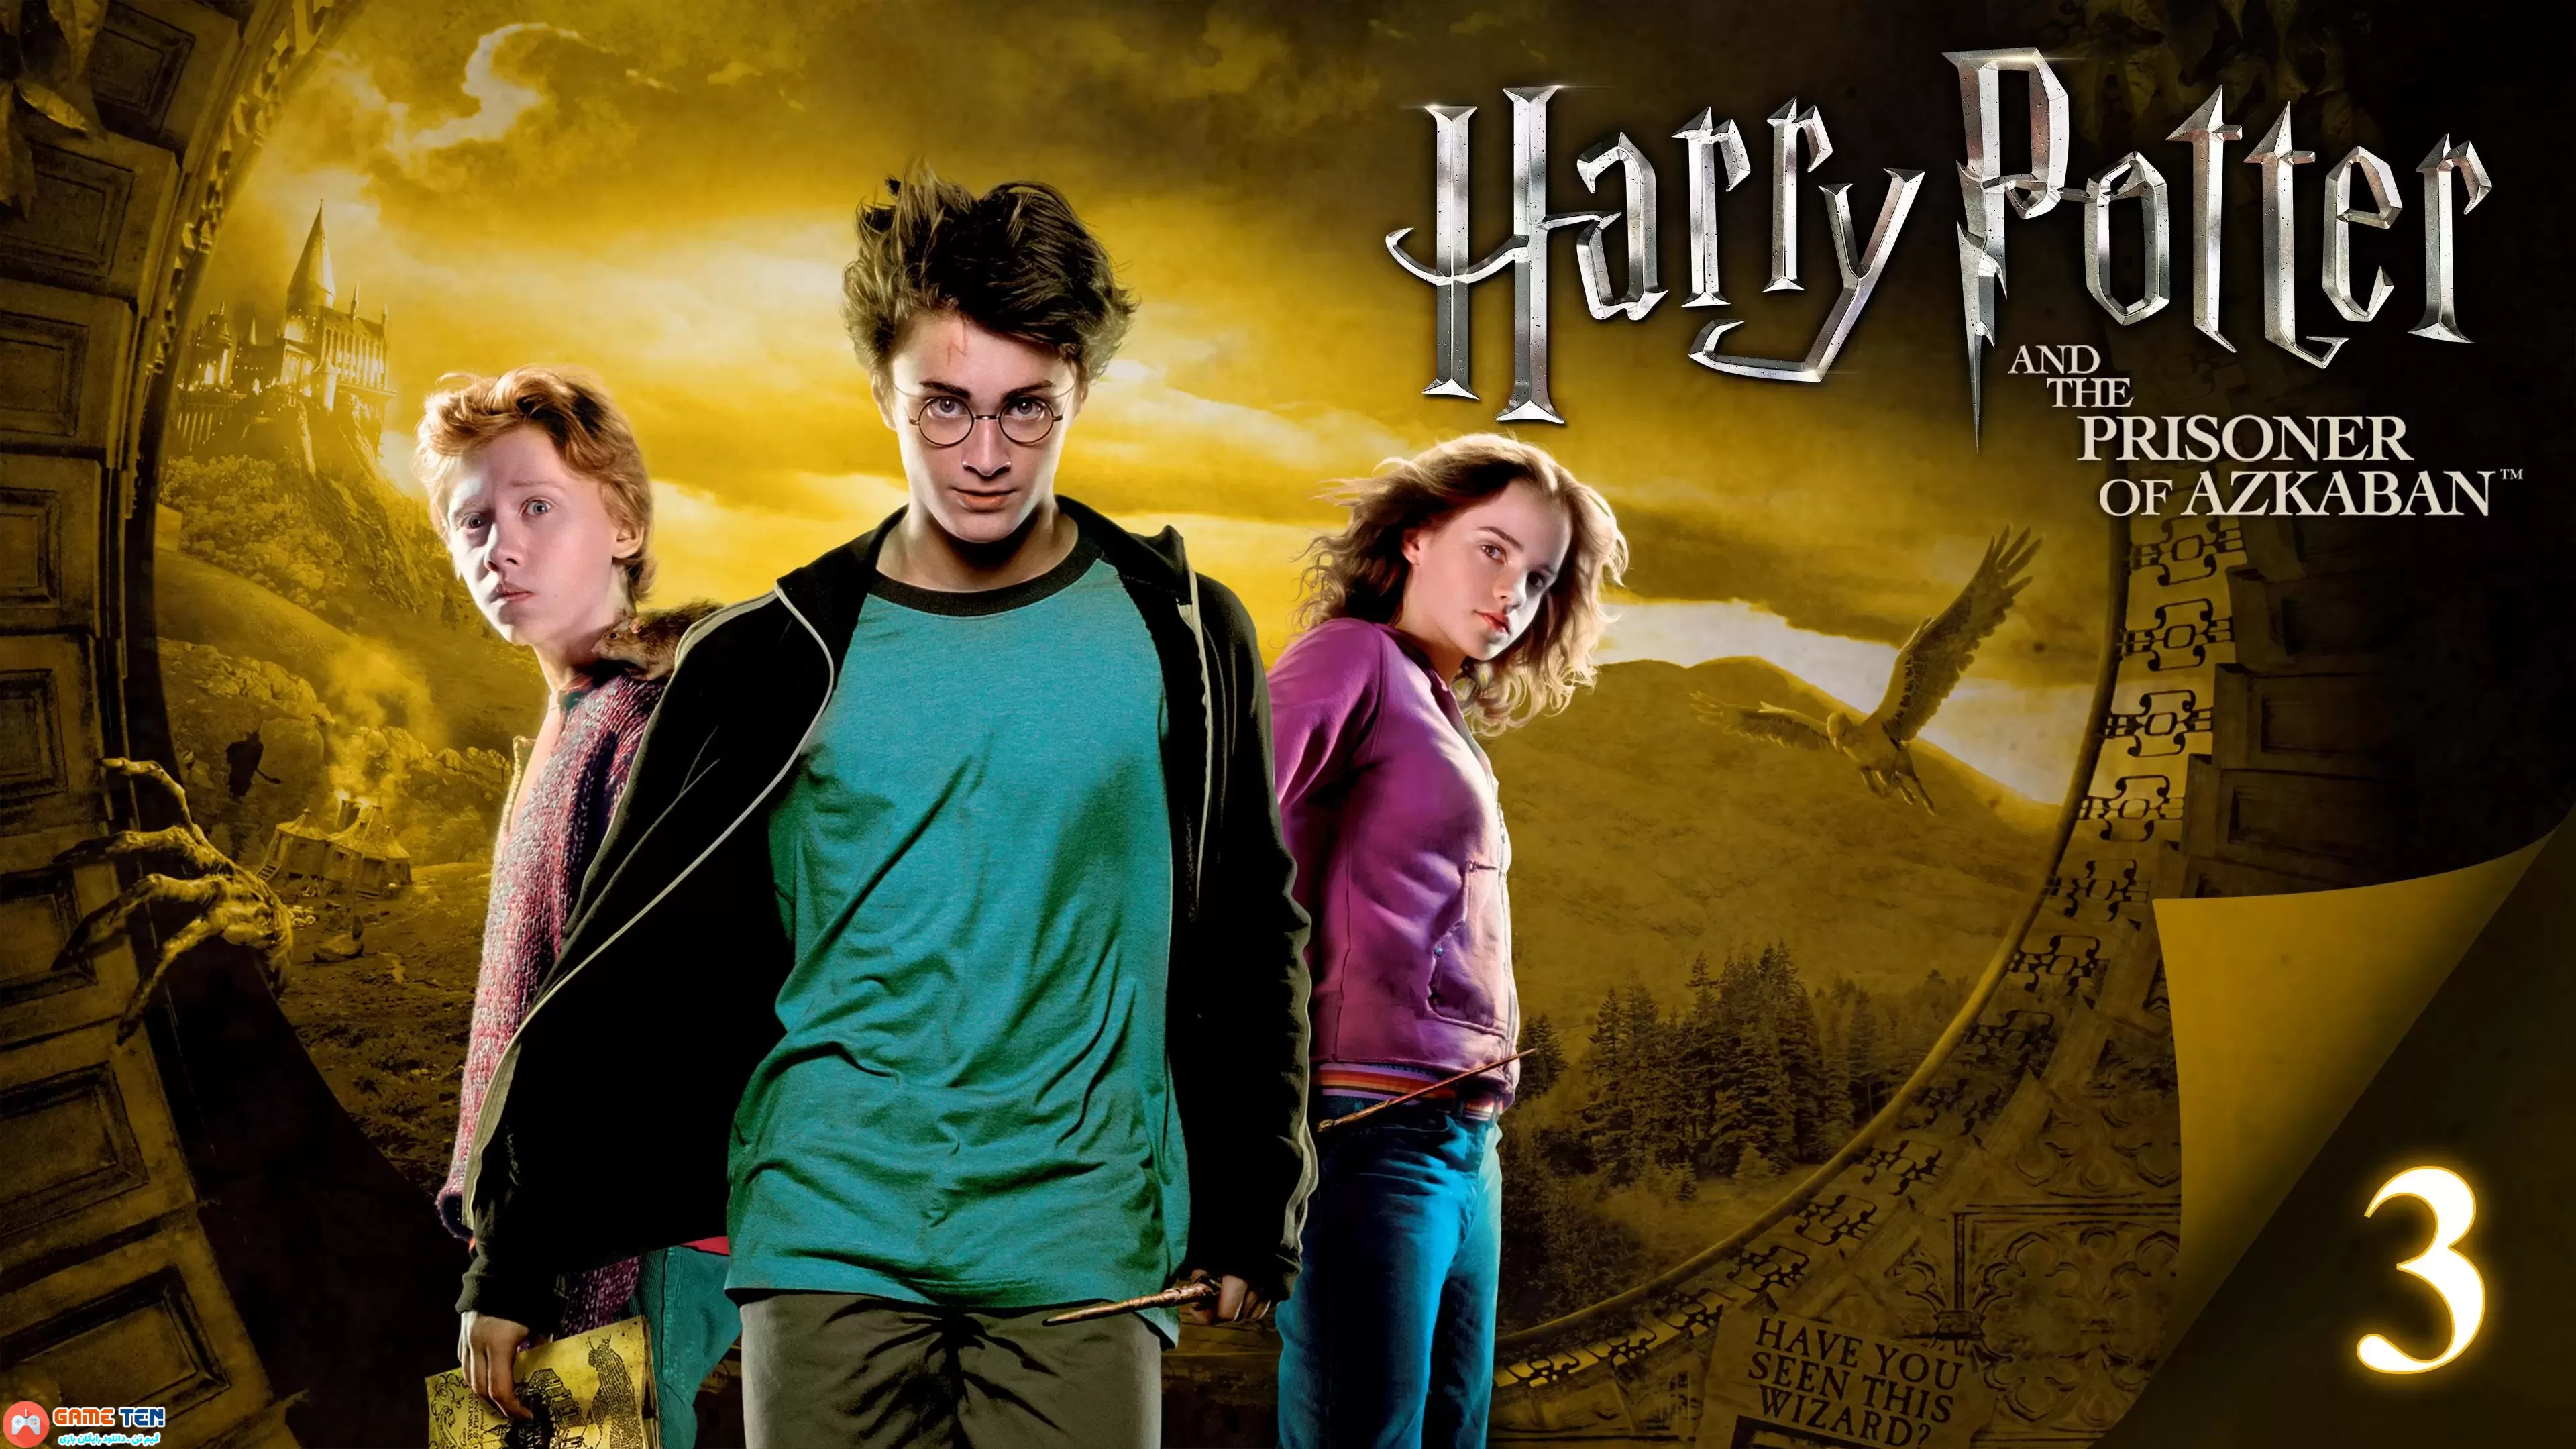 دانلود فیلم هری پاتر و زندانی آزکابان Harry Potter and the Prisoner of Azkaban 2004